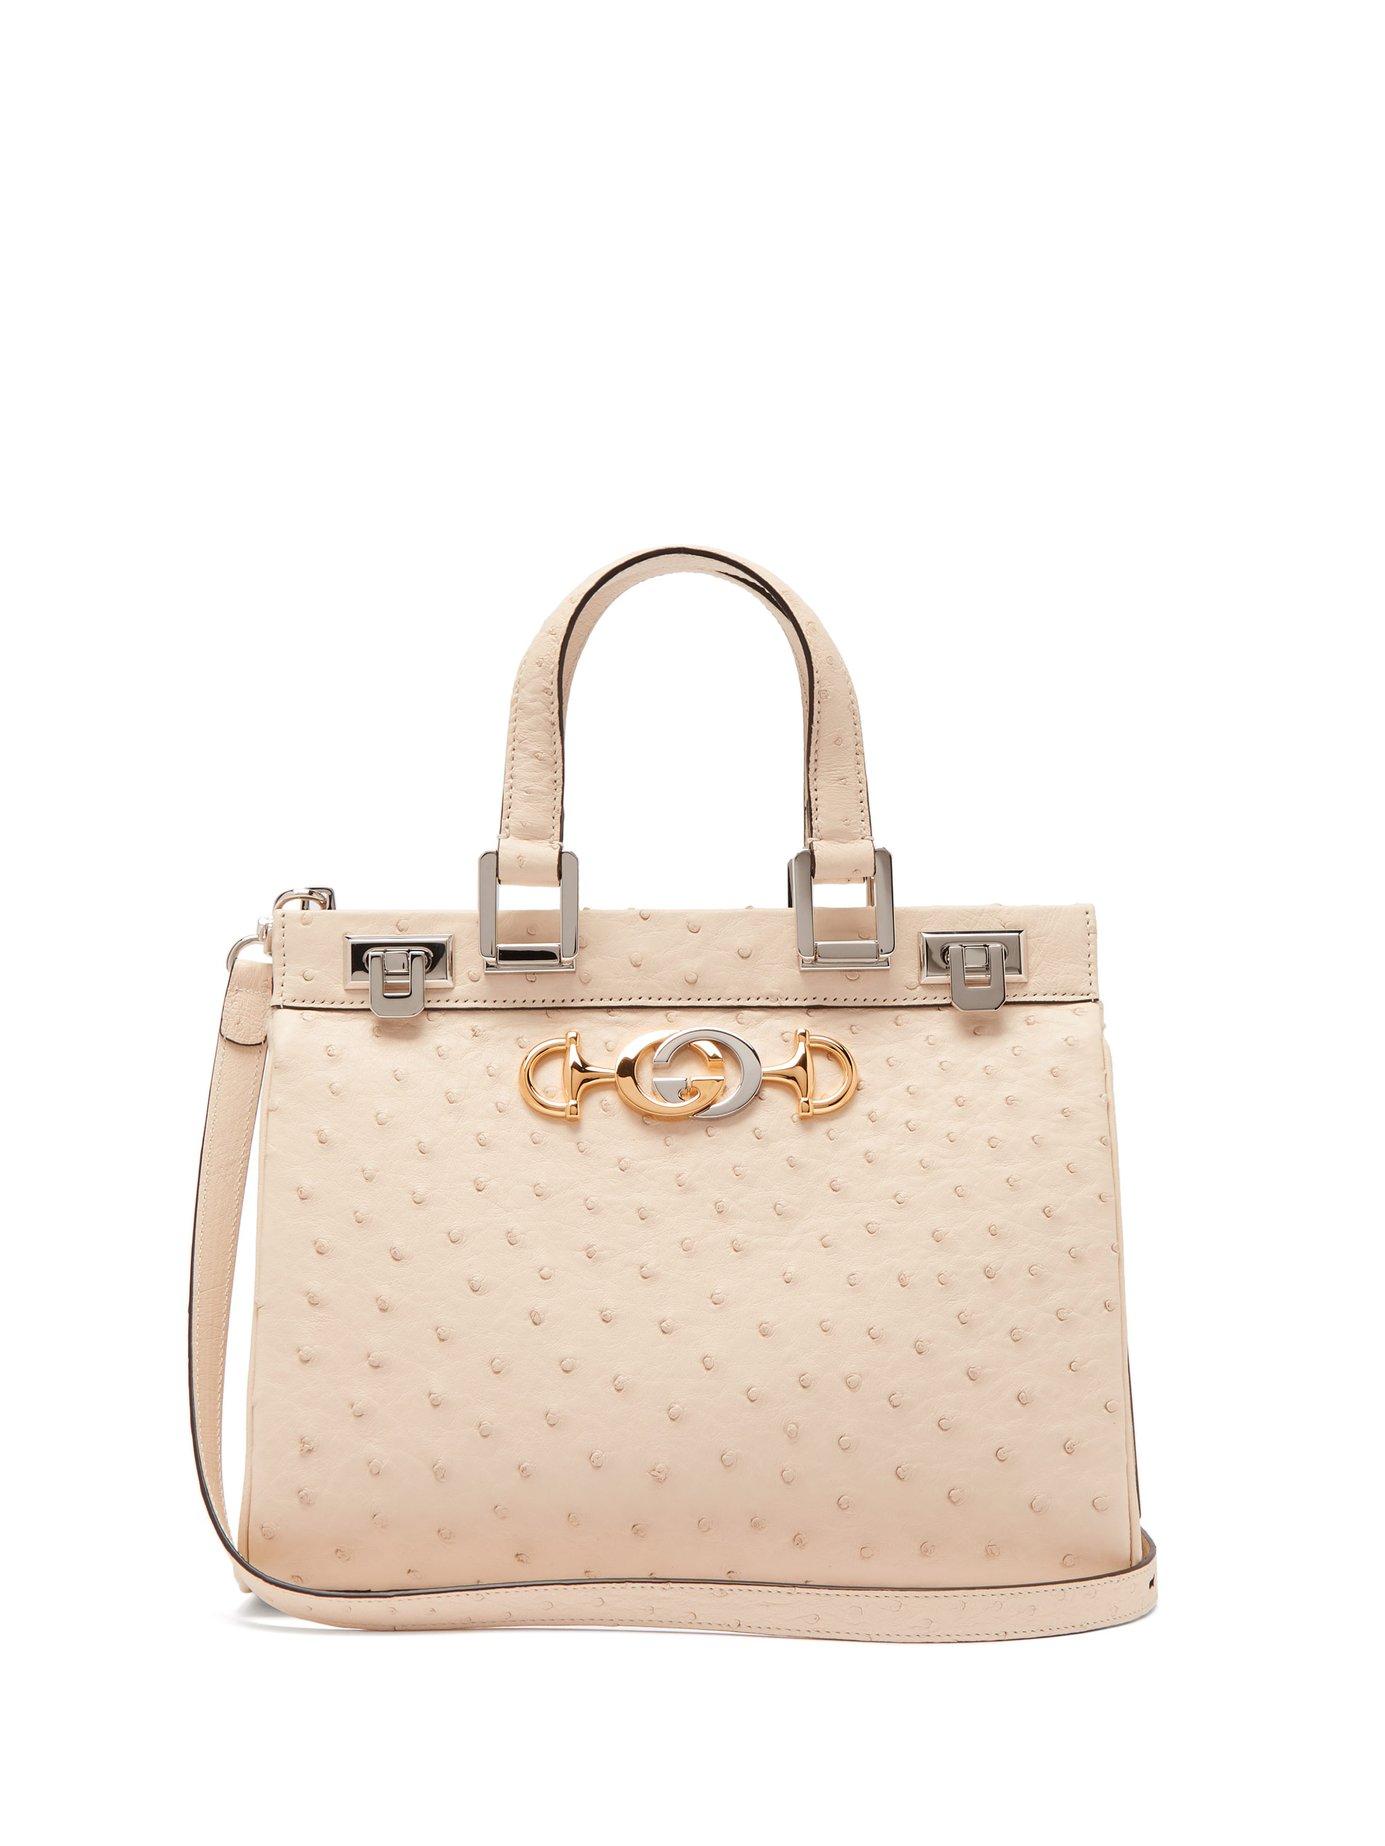 Gucci Zumi Medium Ostrich Shoulder Bag in White - Lyst